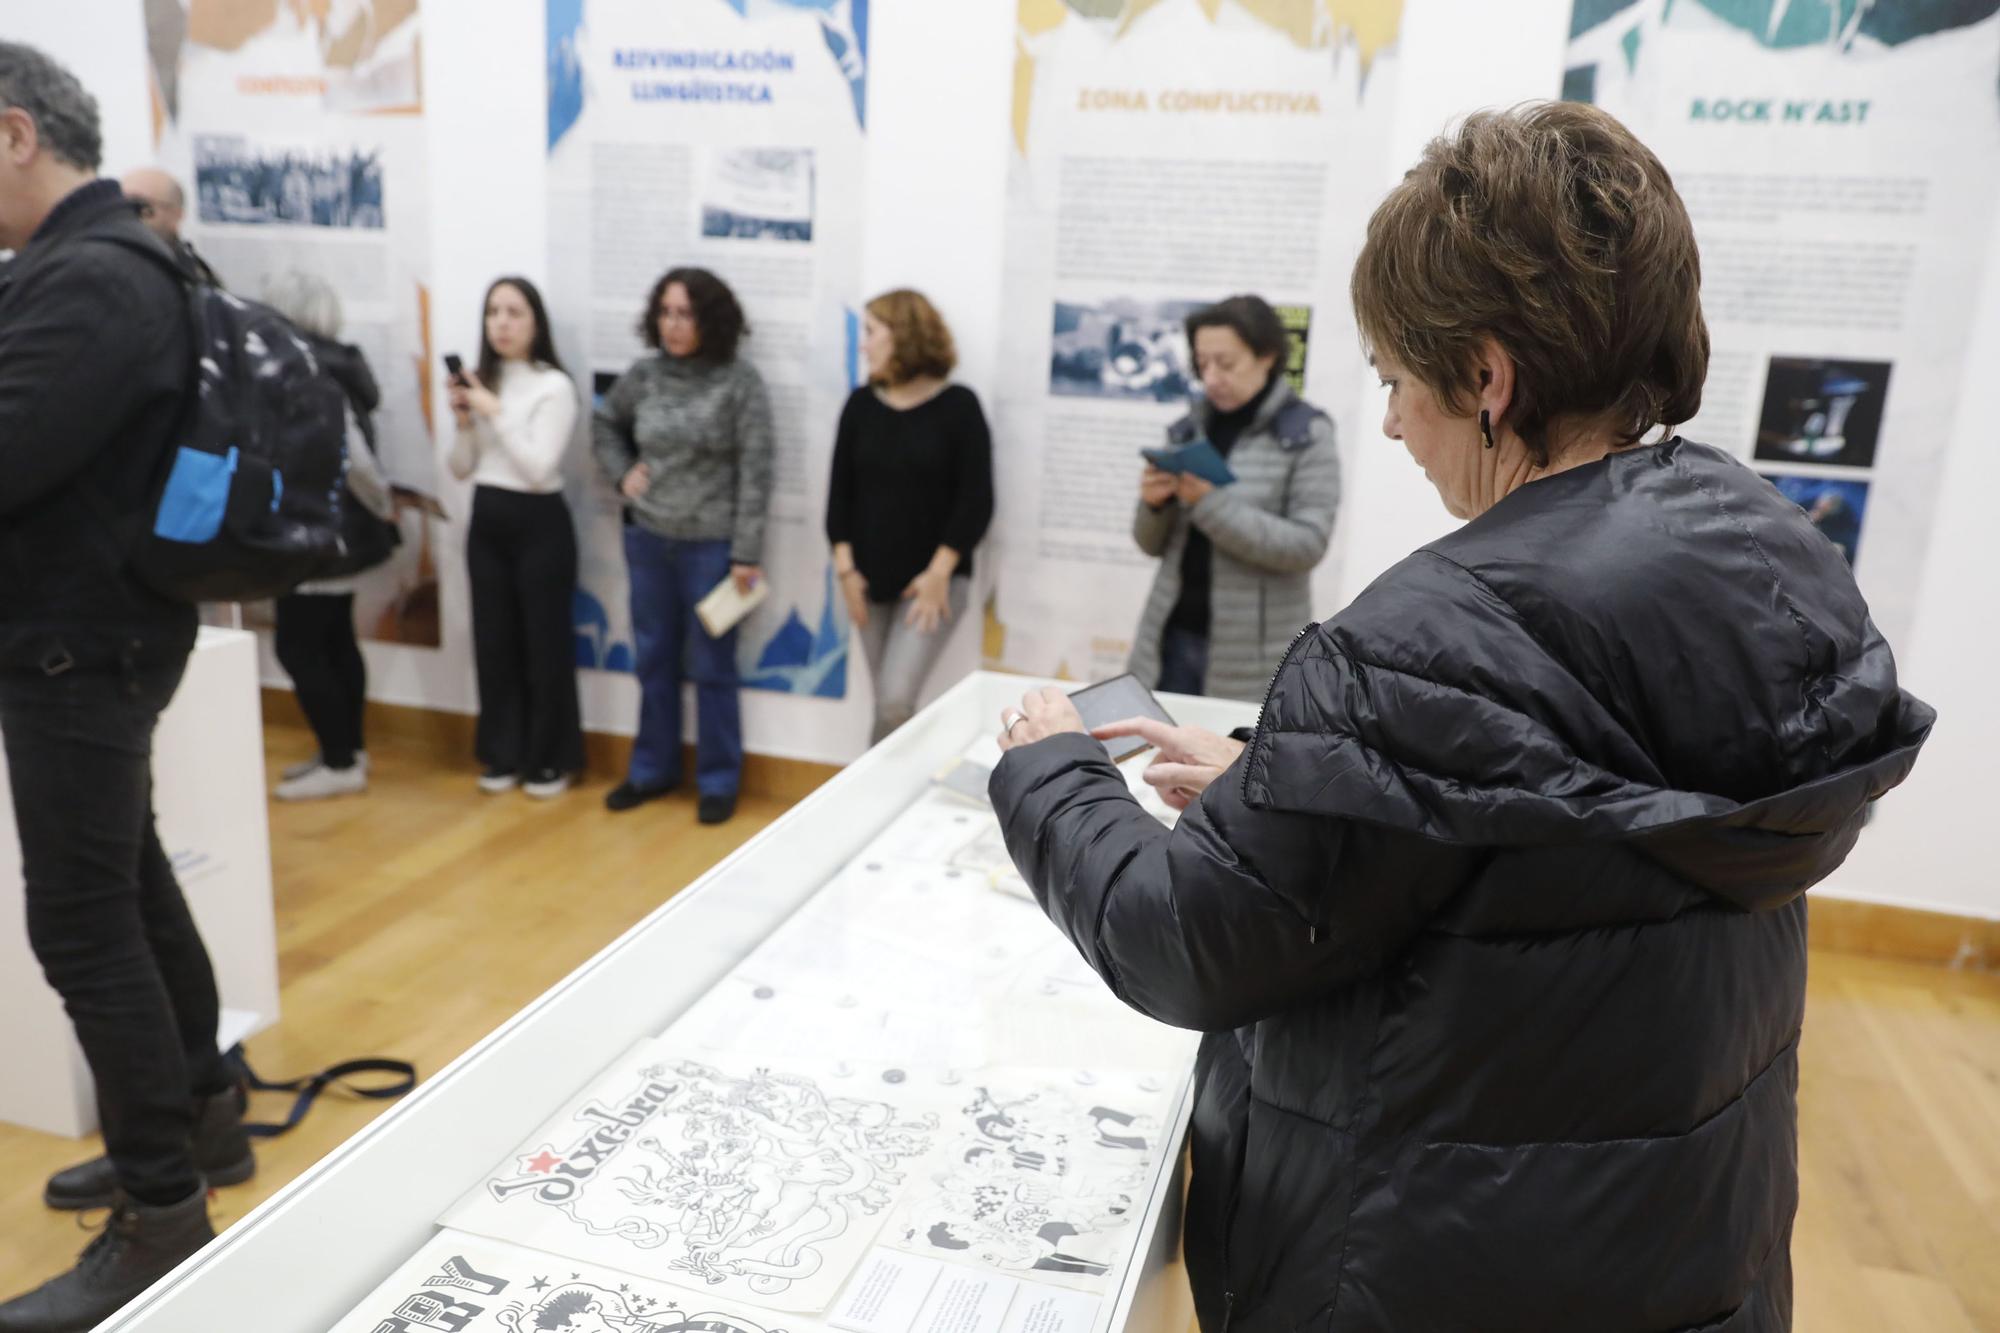 Exposición sobre "Dixebra" en el Antiguo Instituto de Gijón